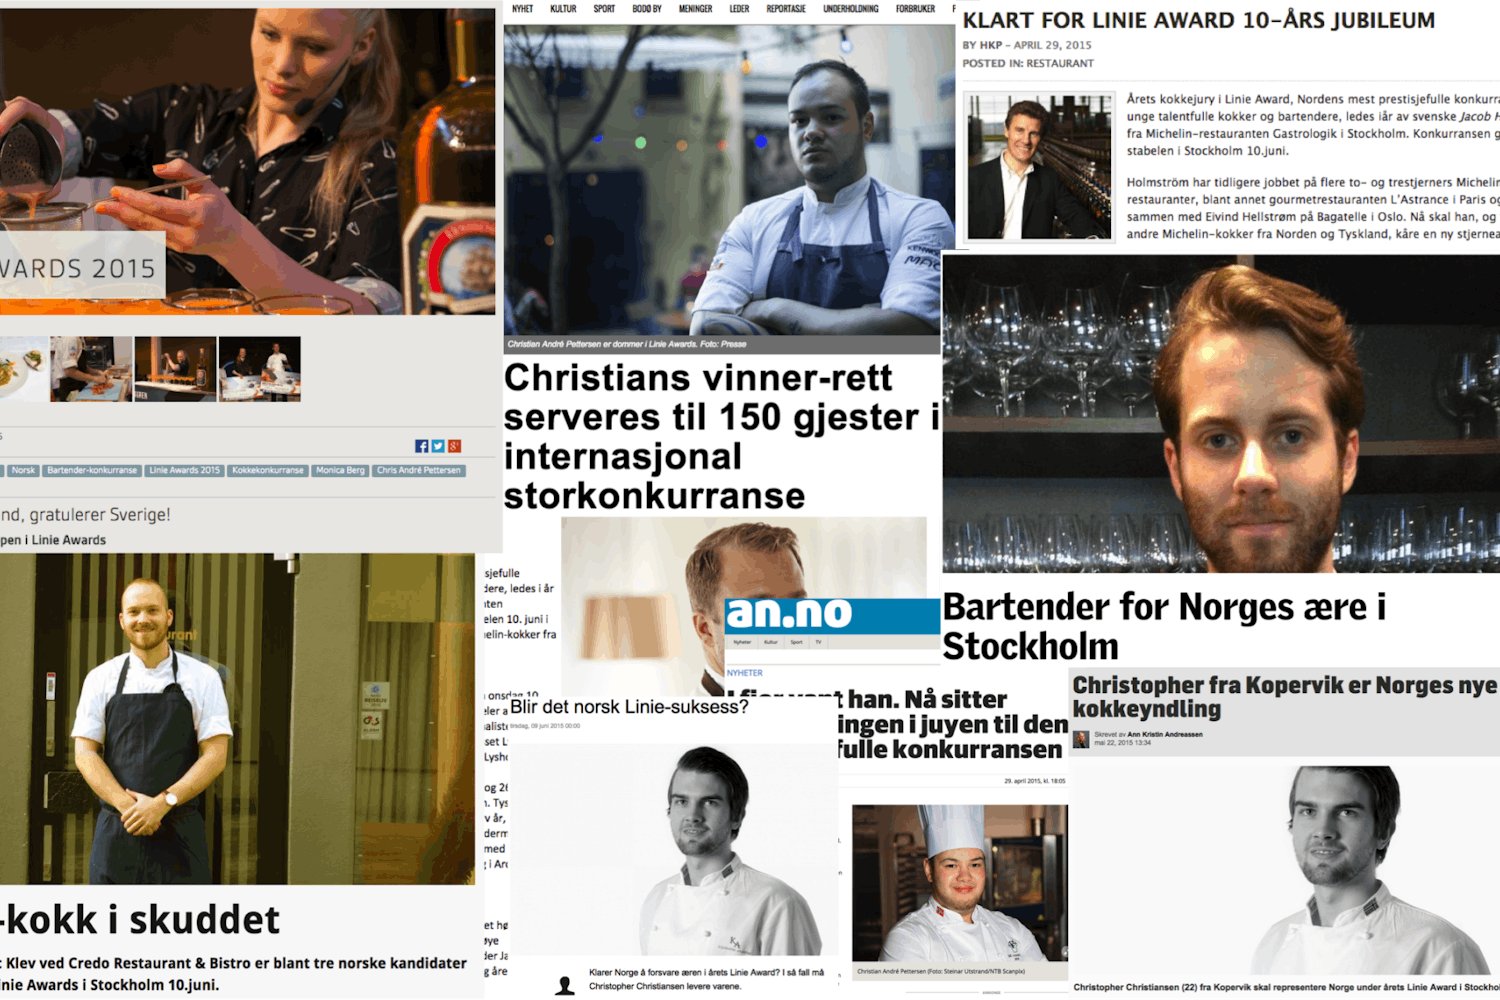 Skjermdump av mange ulike artikler om Koker i Linie Awards 2015